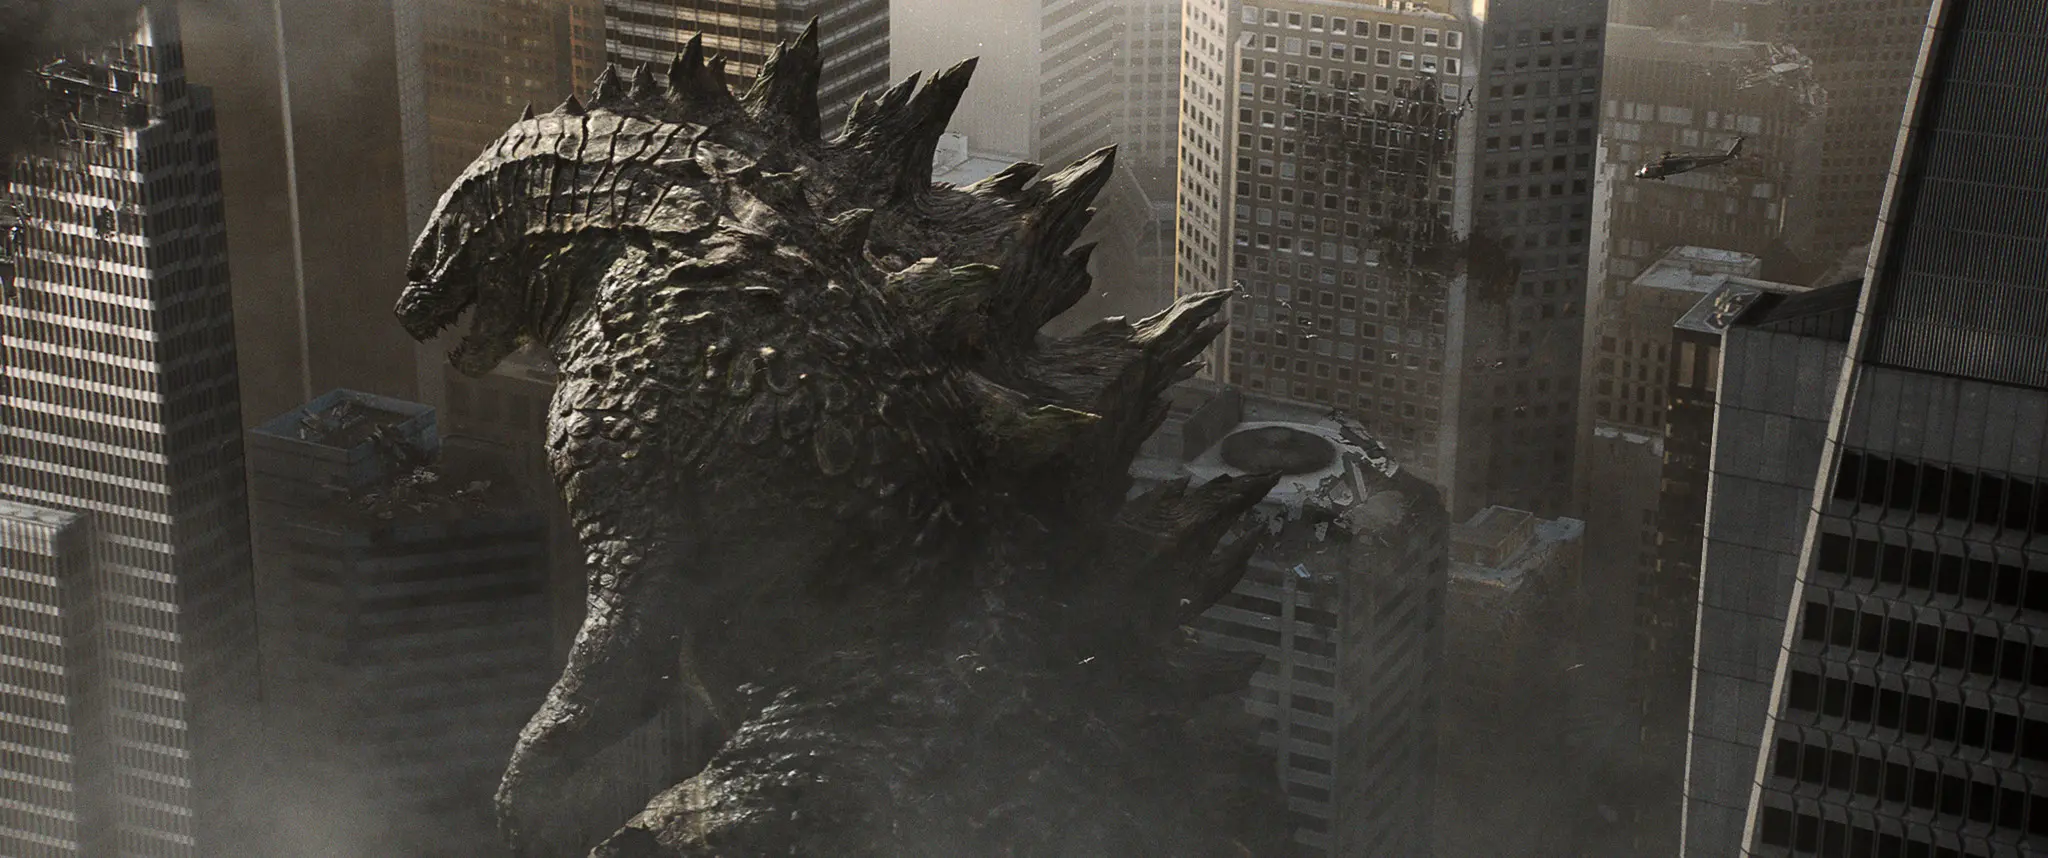 Studio Toho siap untuk menggarap film Godzilla versi Jepang yang ke-28.